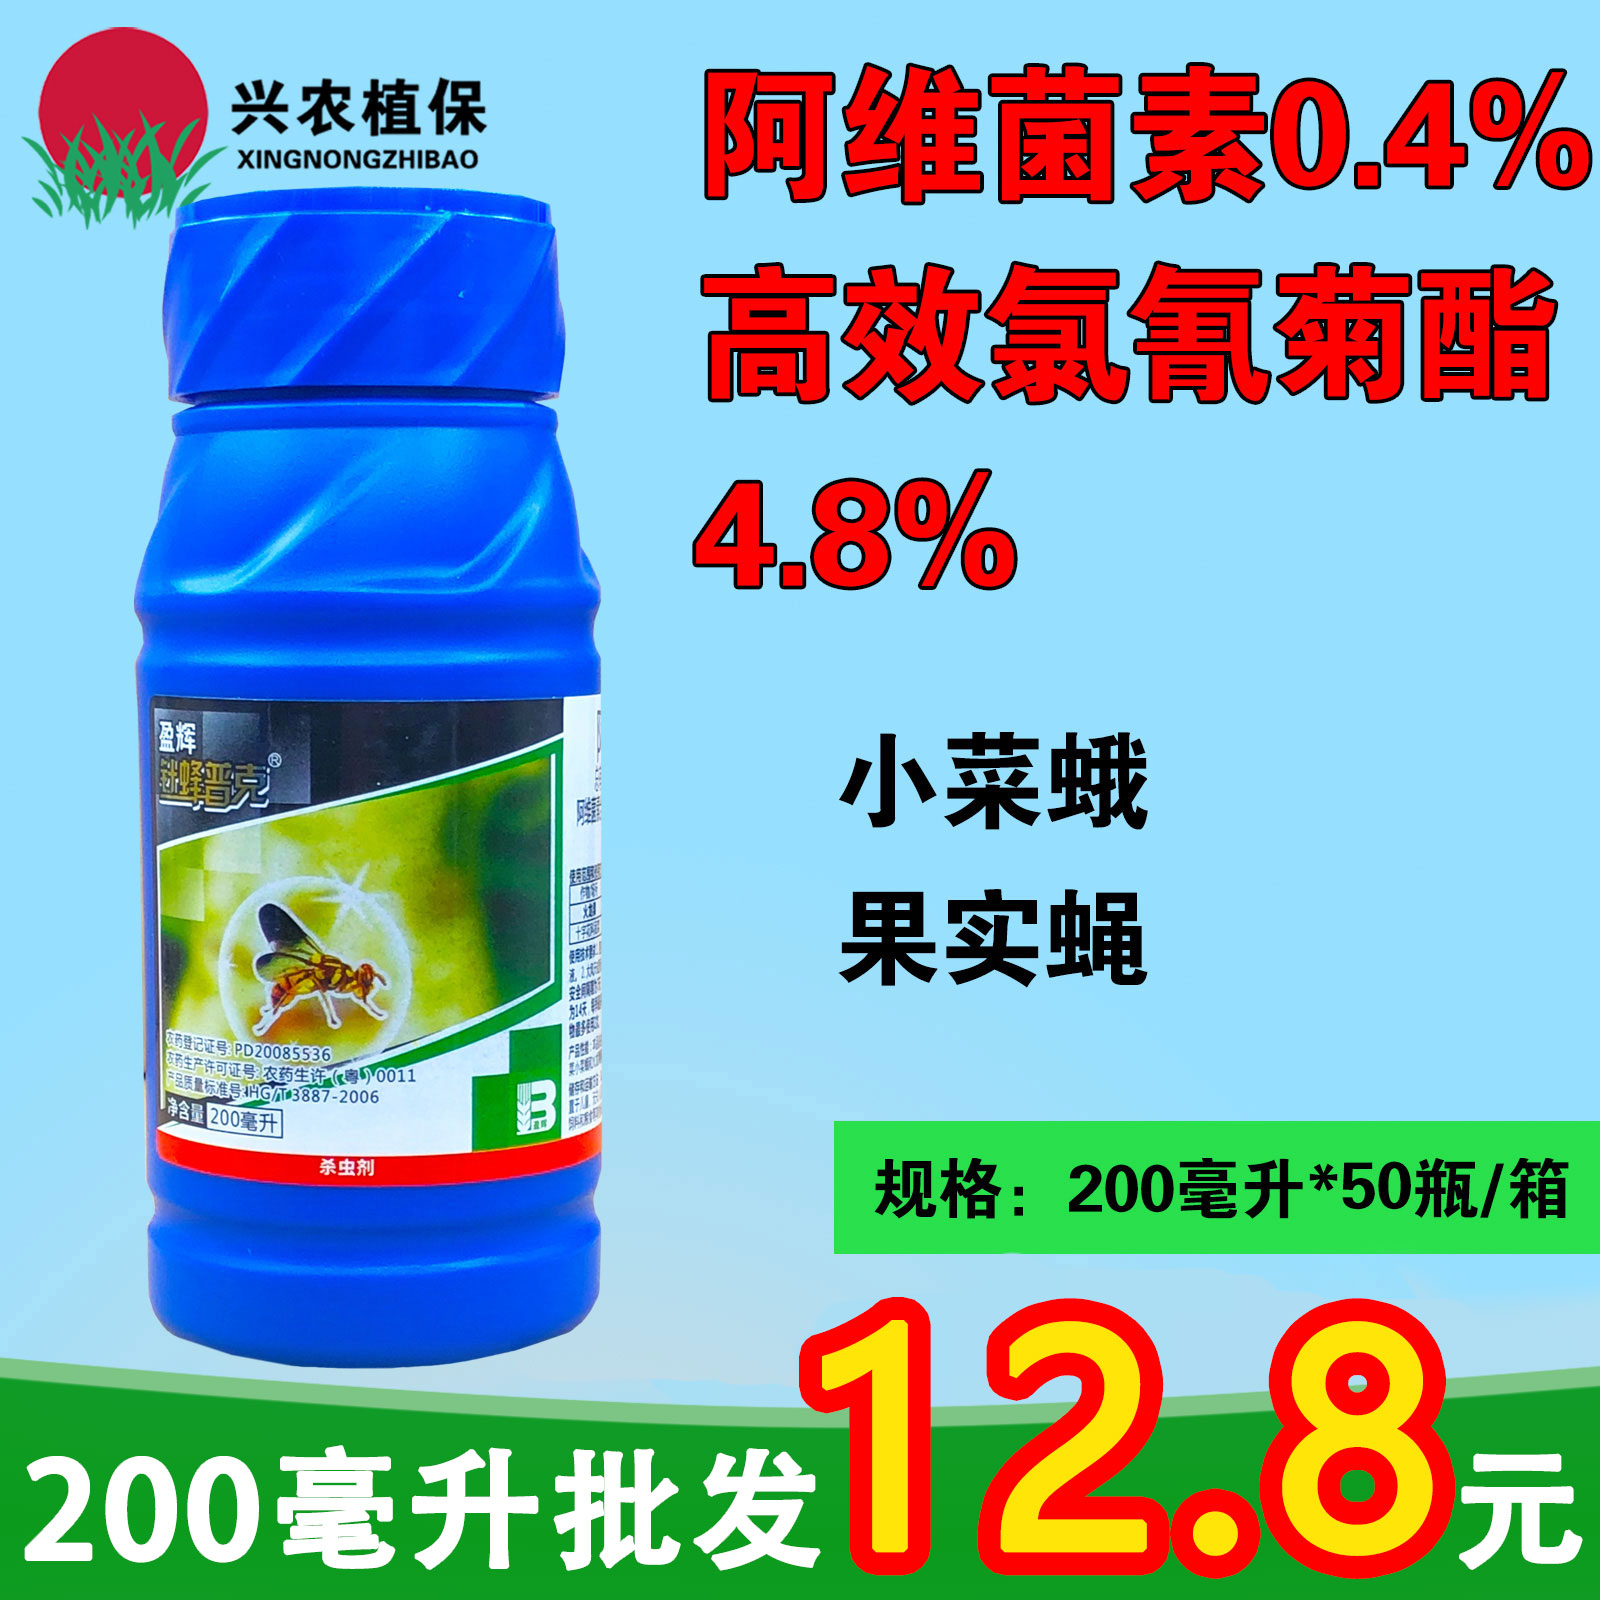 针蜂普克5.2%阿维高氯苦瓜柑橘针蜂瓜实蝇小菜蛾农药杀虫剂200ml